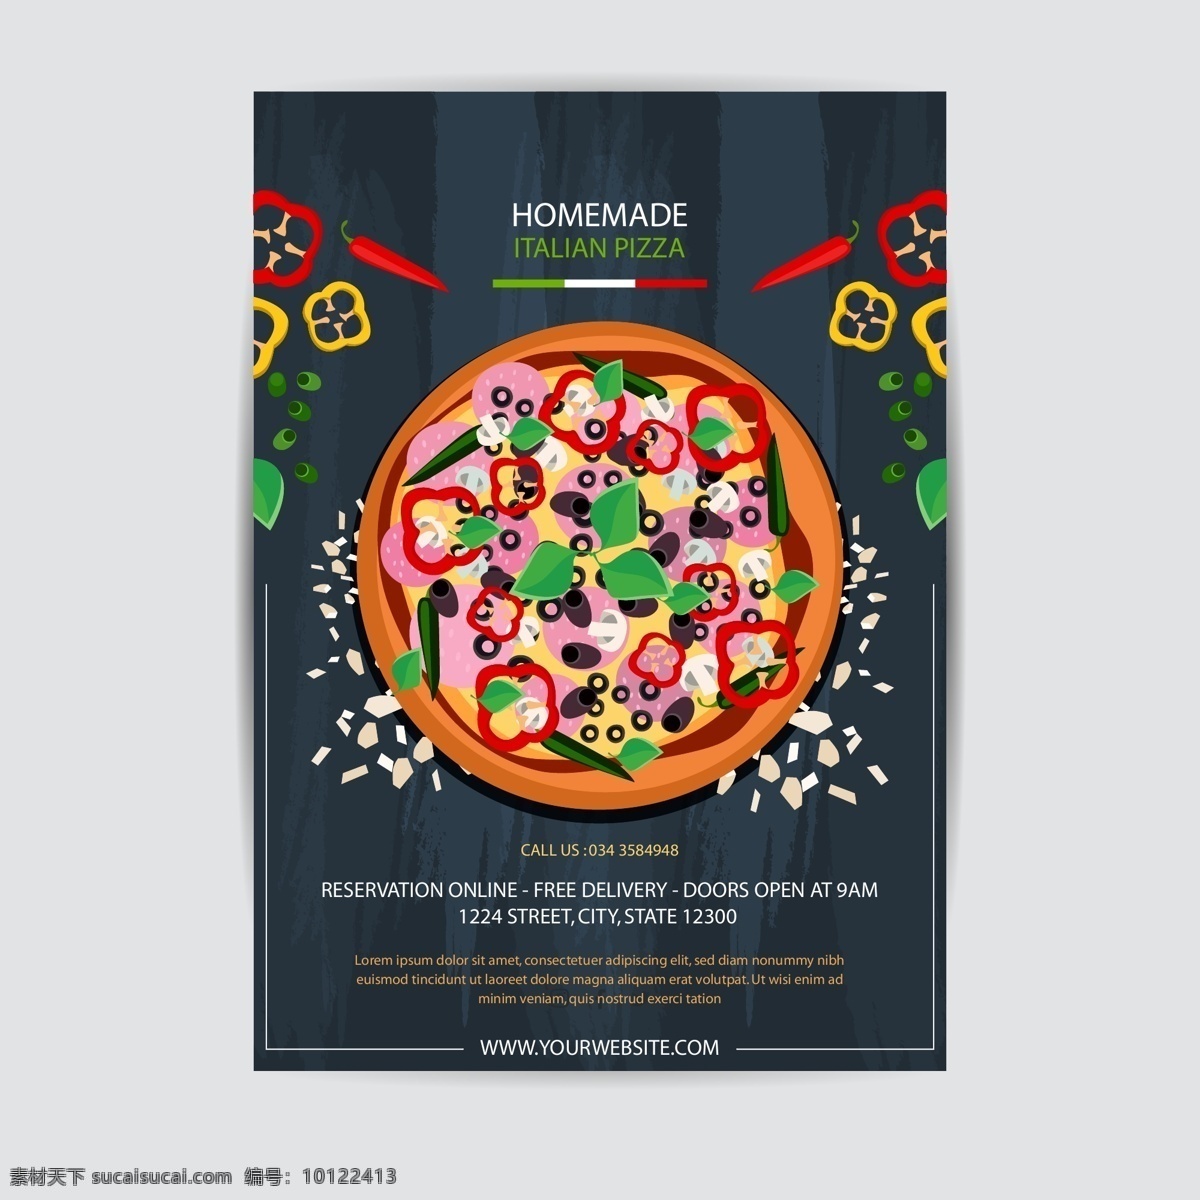 披萨海报 披萨菜单 意大利披萨 矢量披萨 卡通披萨 手绘披萨 披萨插画 辣椒 快餐披萨 菜单设计 国外海报 外国海报 美食 食物